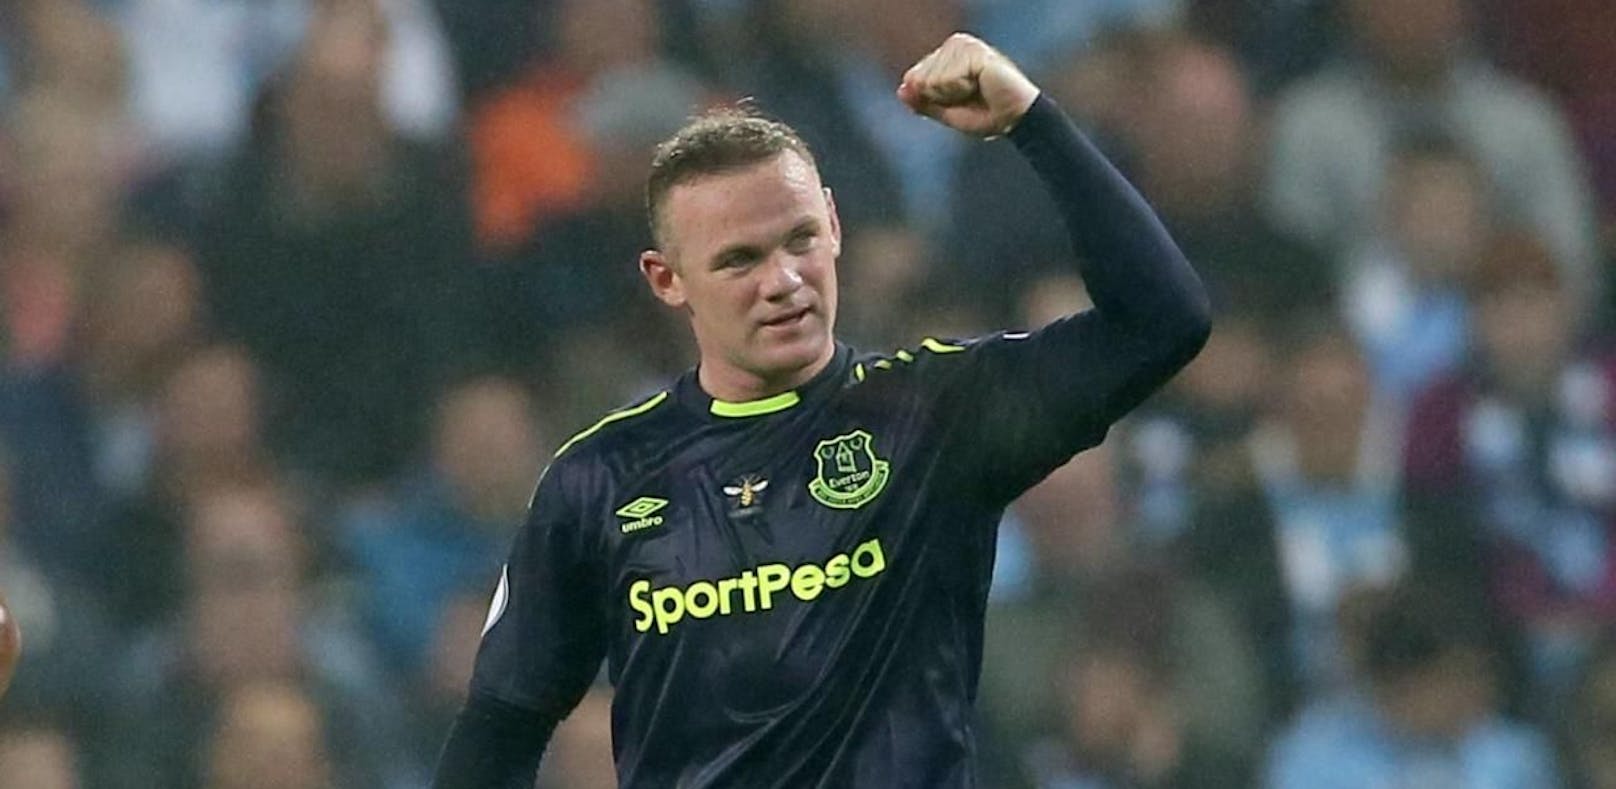 200 Tore! Rooney feiert gegen City Meilenstein